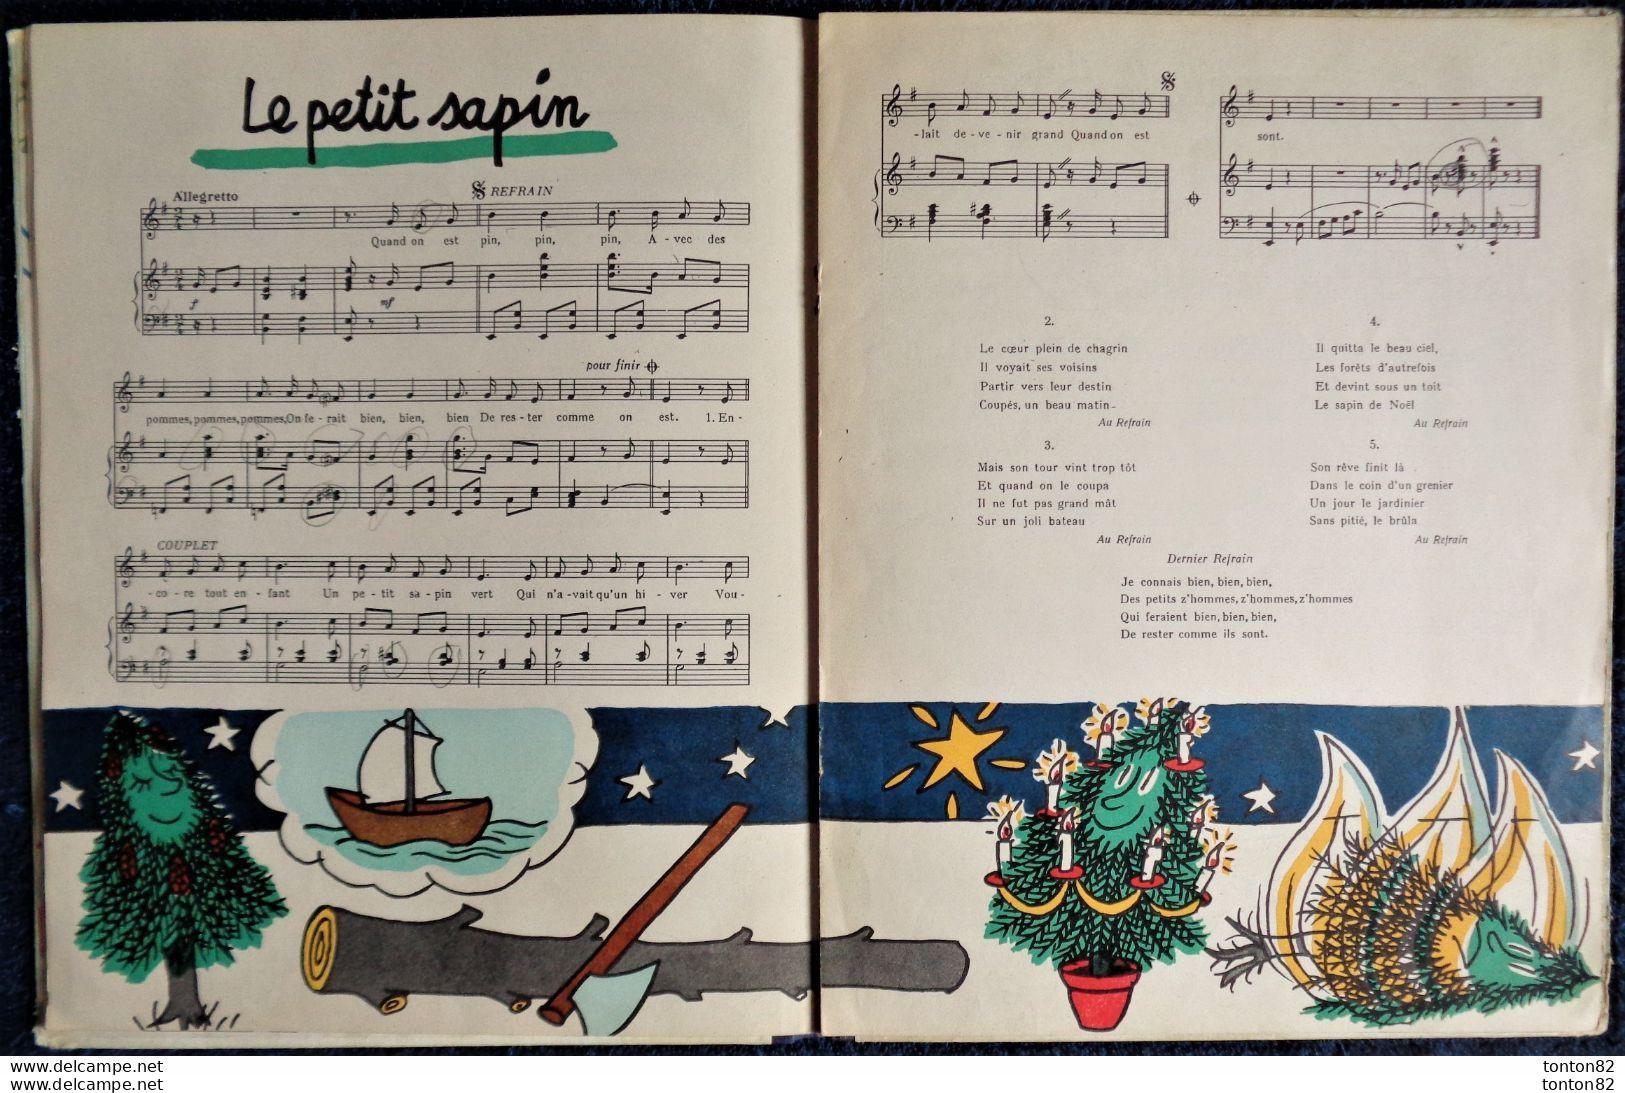 8 Chansons pour les PETITS - Créées par BOURVIL - Illustrées par Jean EFFEL - Éditions du Trèfle à Quatre Feuilles .